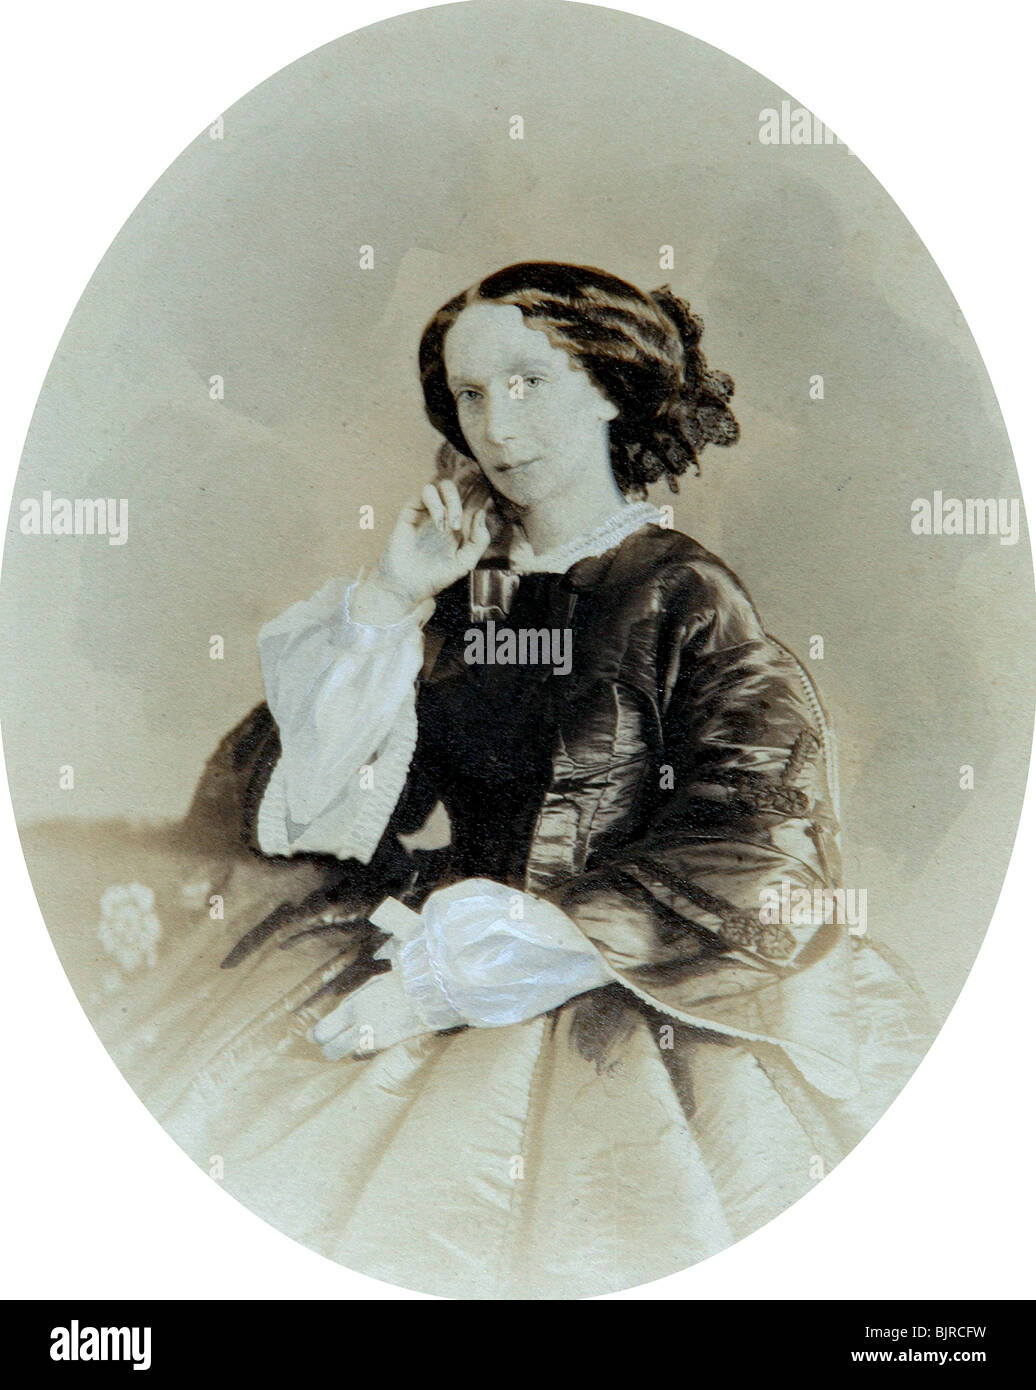 La emperatriz María Alexandrovna de Rusia, a finales de 1850. Artista: Andrei Deniere Foto de stock